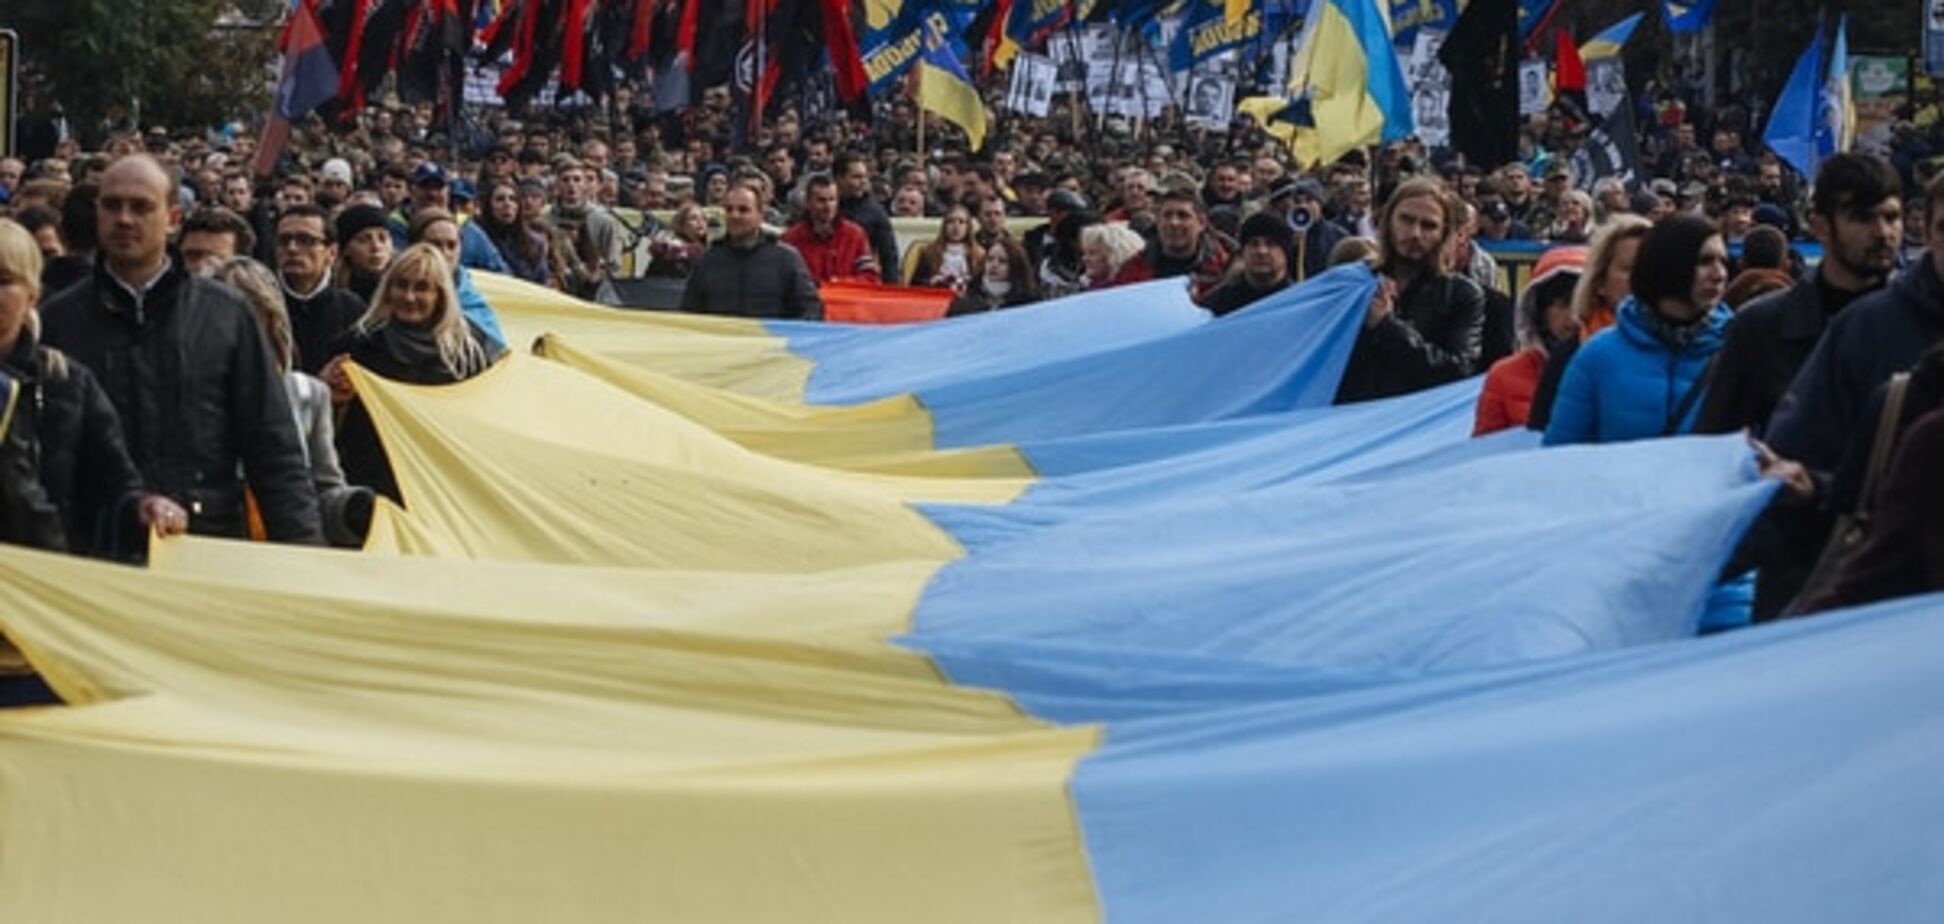 Зріє третій Майдан? Соціологи з'ясували рівень протестних настроїв українців